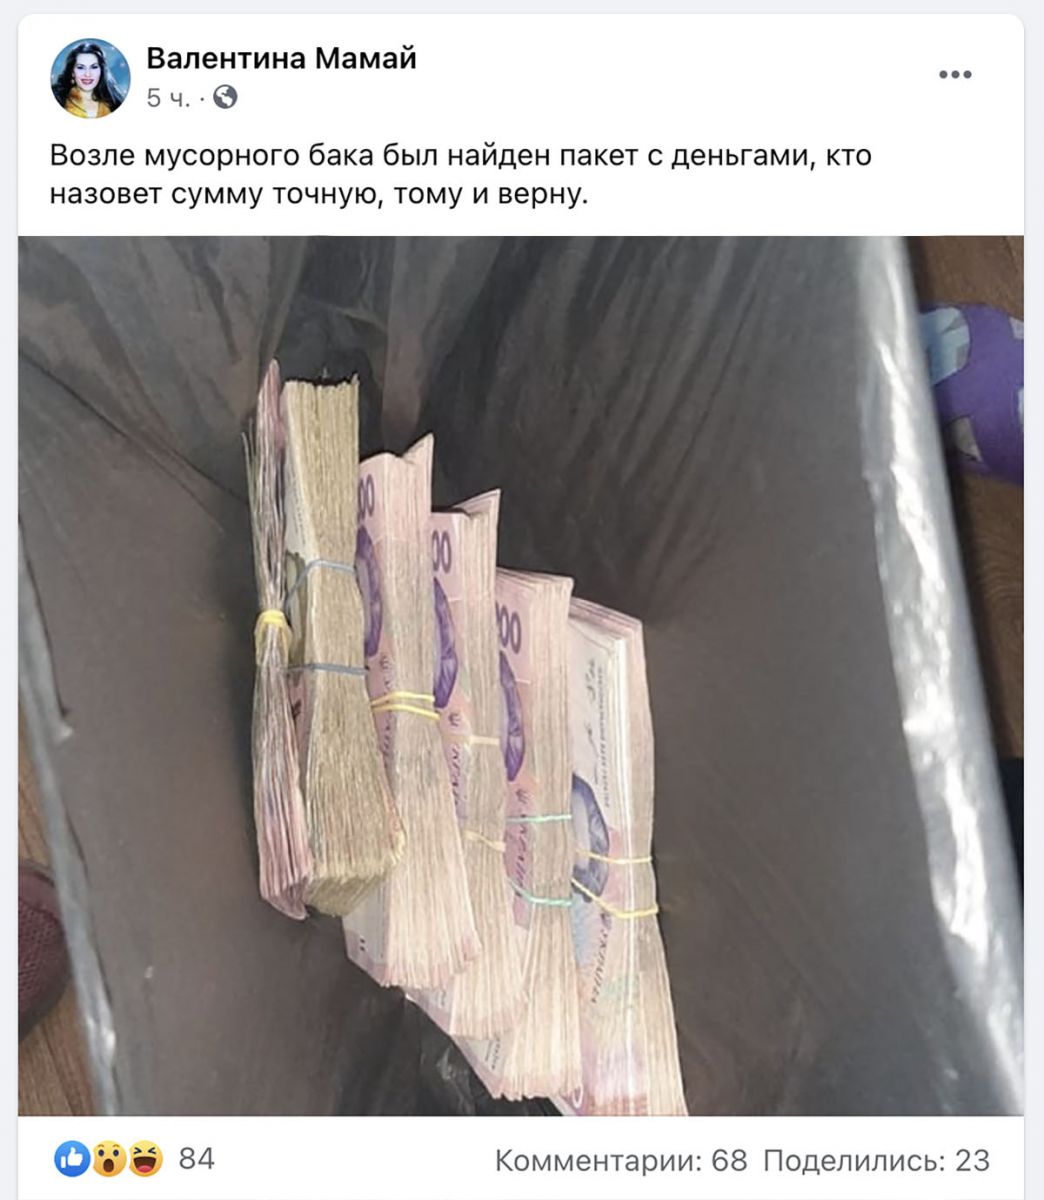 110 тыс грн в пакете возле мусорки. Валентина Мамай нашла владельца и вернула деньги